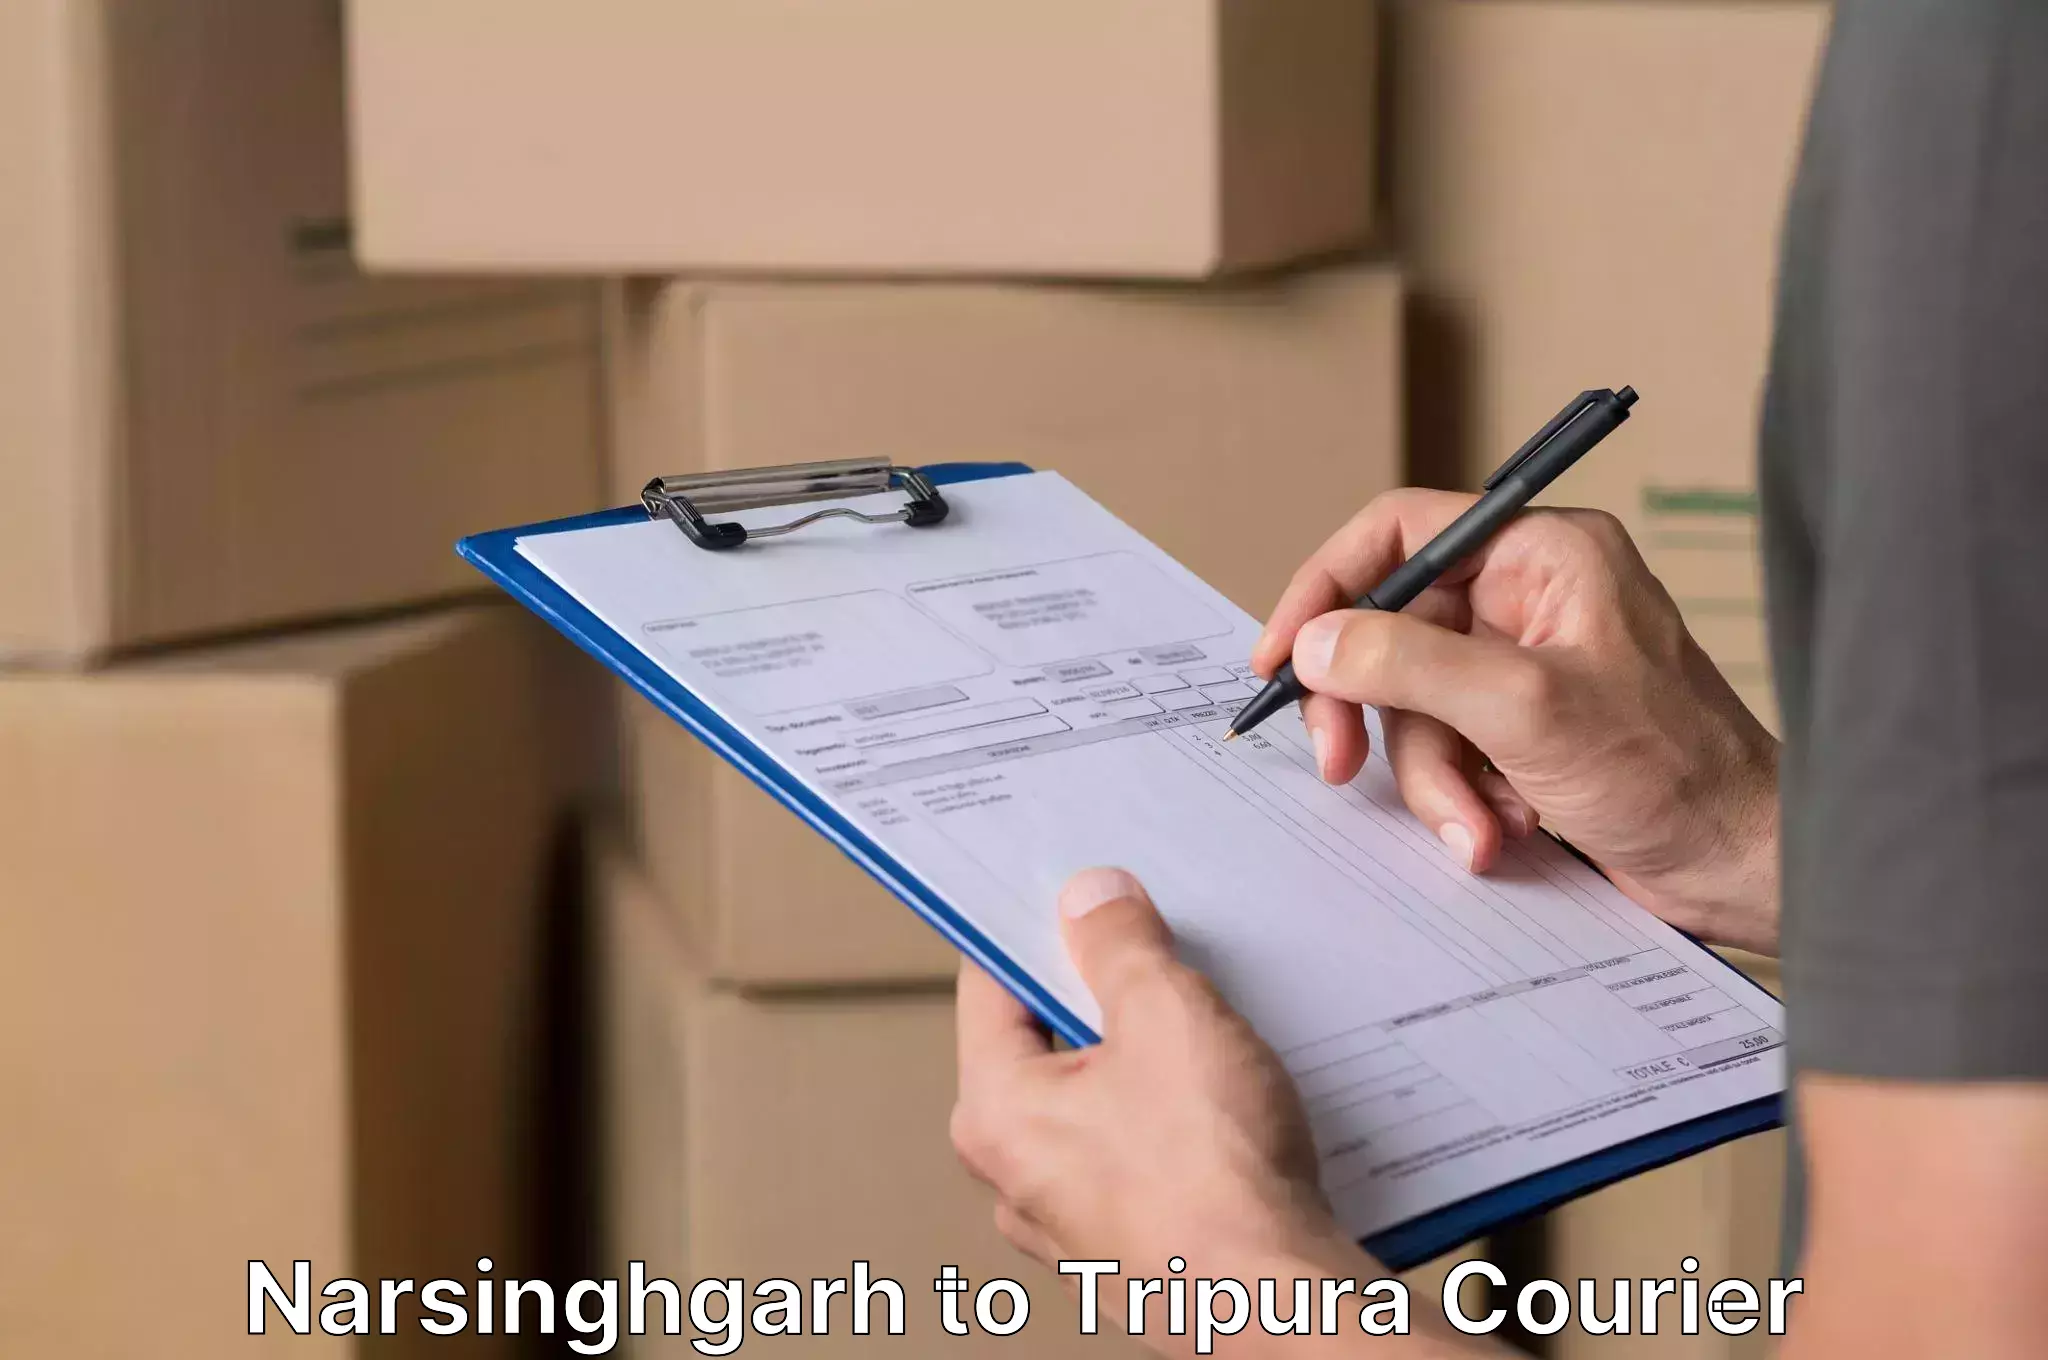 Safe furniture transport Narsinghgarh to Udaipur Tripura